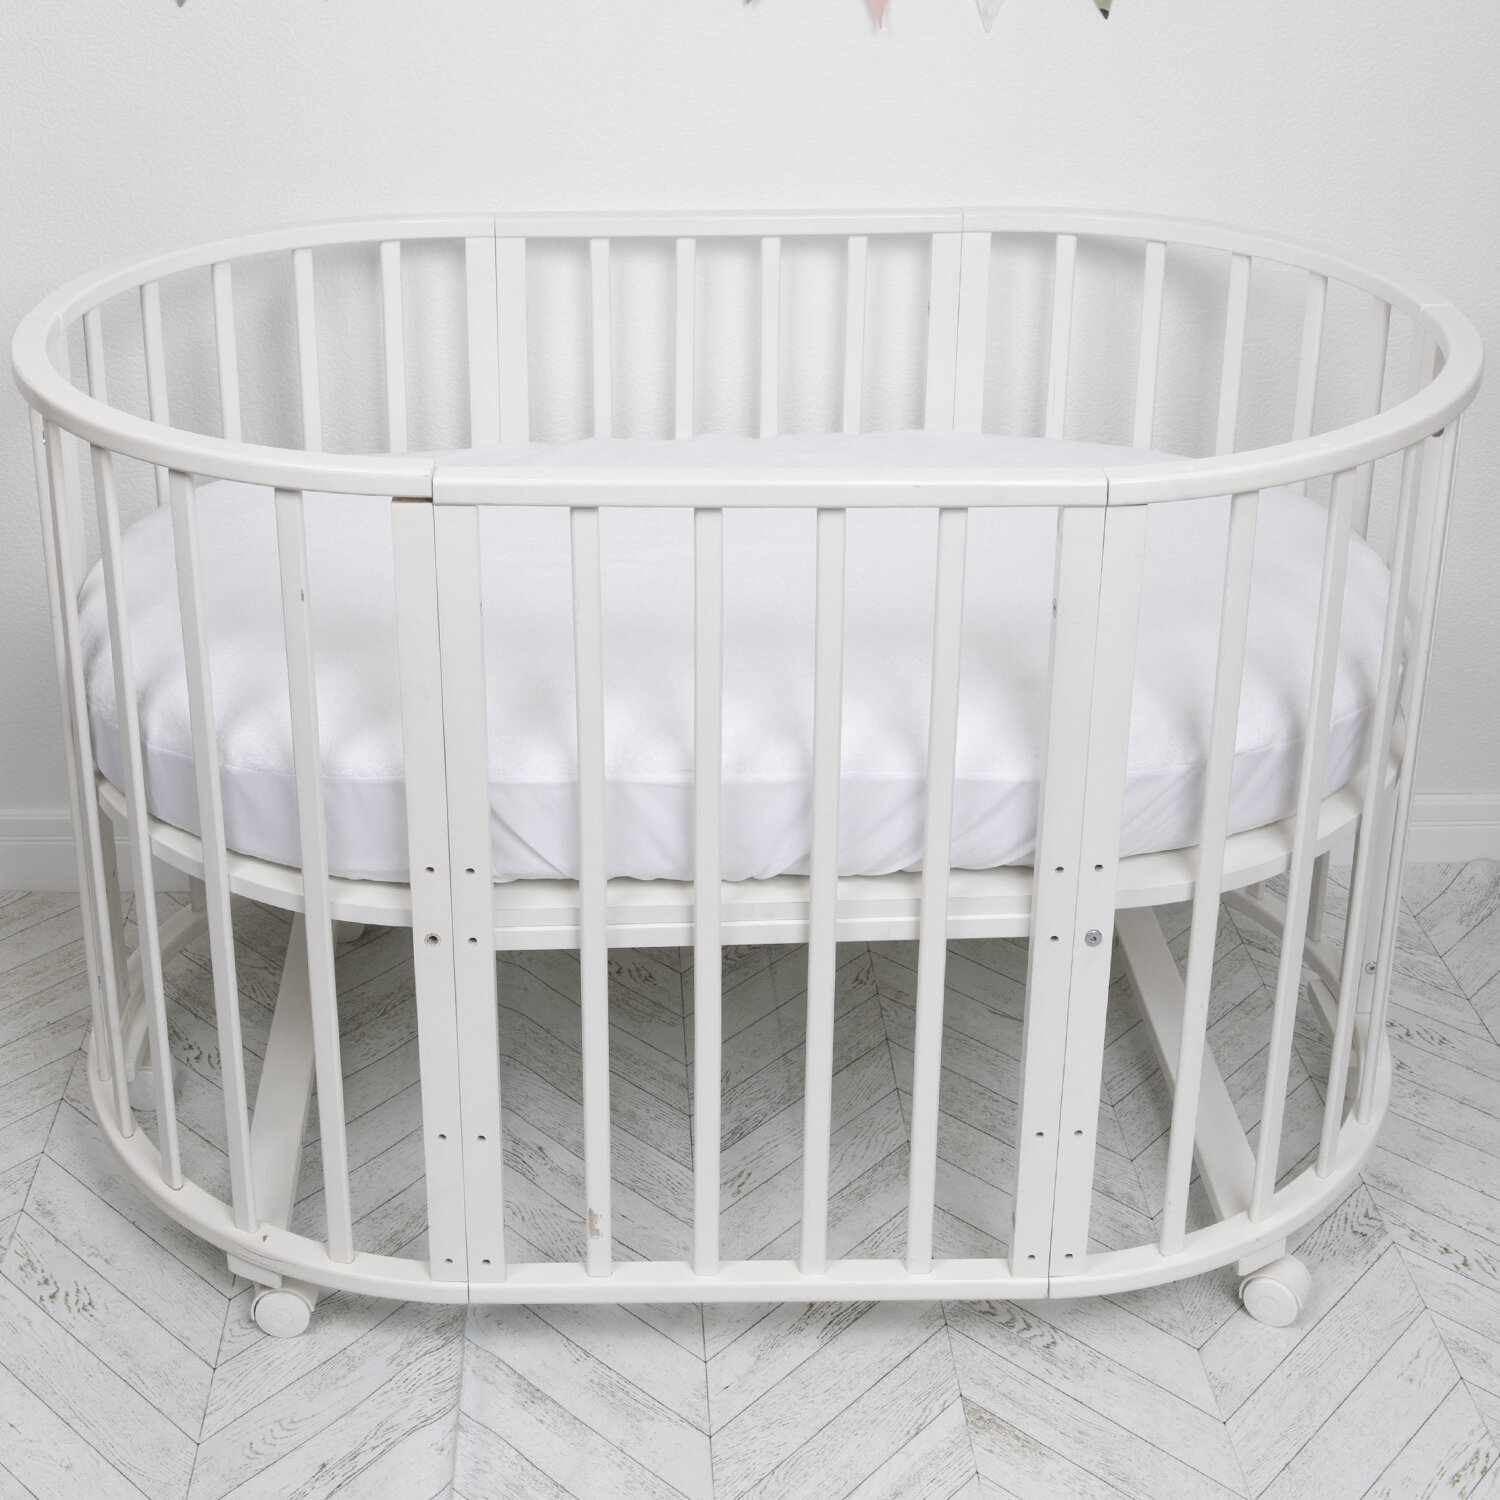 Наматрасник непромокаемый в детскую овальную кроватку 75х125, Верх: махра 100% хлопок/ простыня защитная